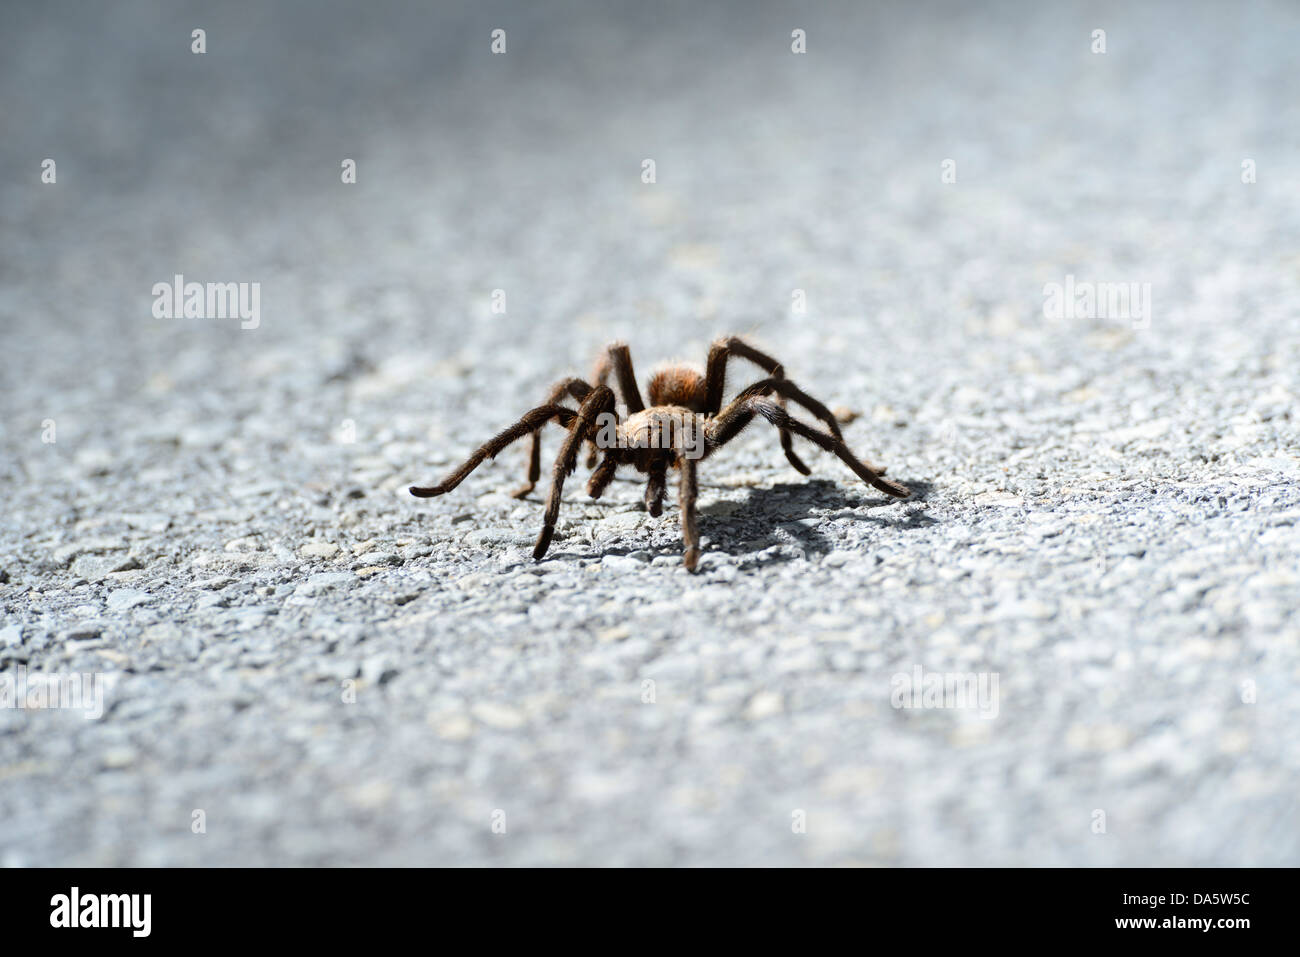 USA, United States, America, North America, Oklahoma, Comanche, tarantula, road, spider, insect Stock Photo